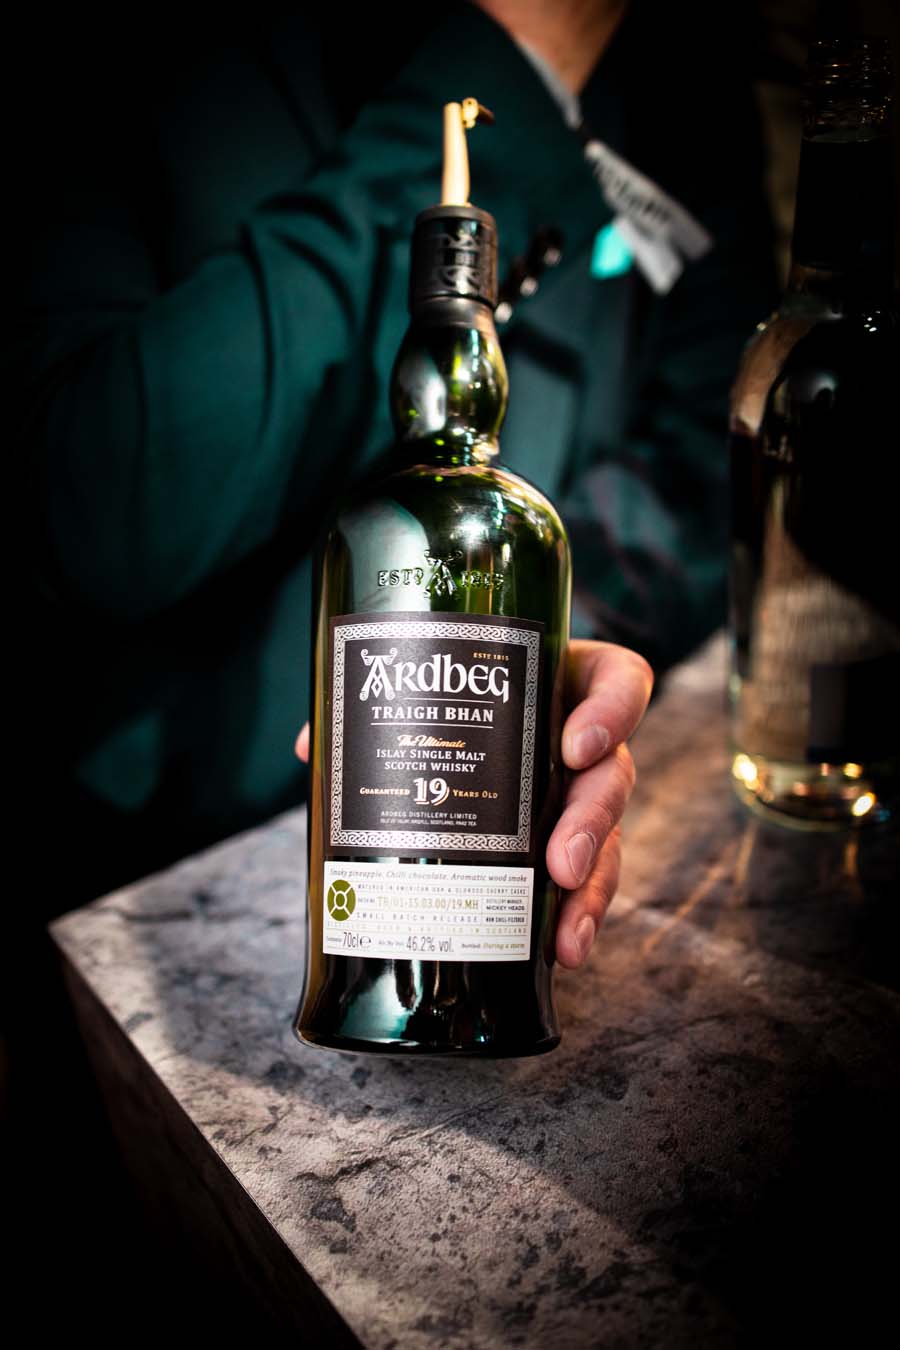 L'importance du verre à whisky dans la dégustation de ce spiritueux –  Maison Liv